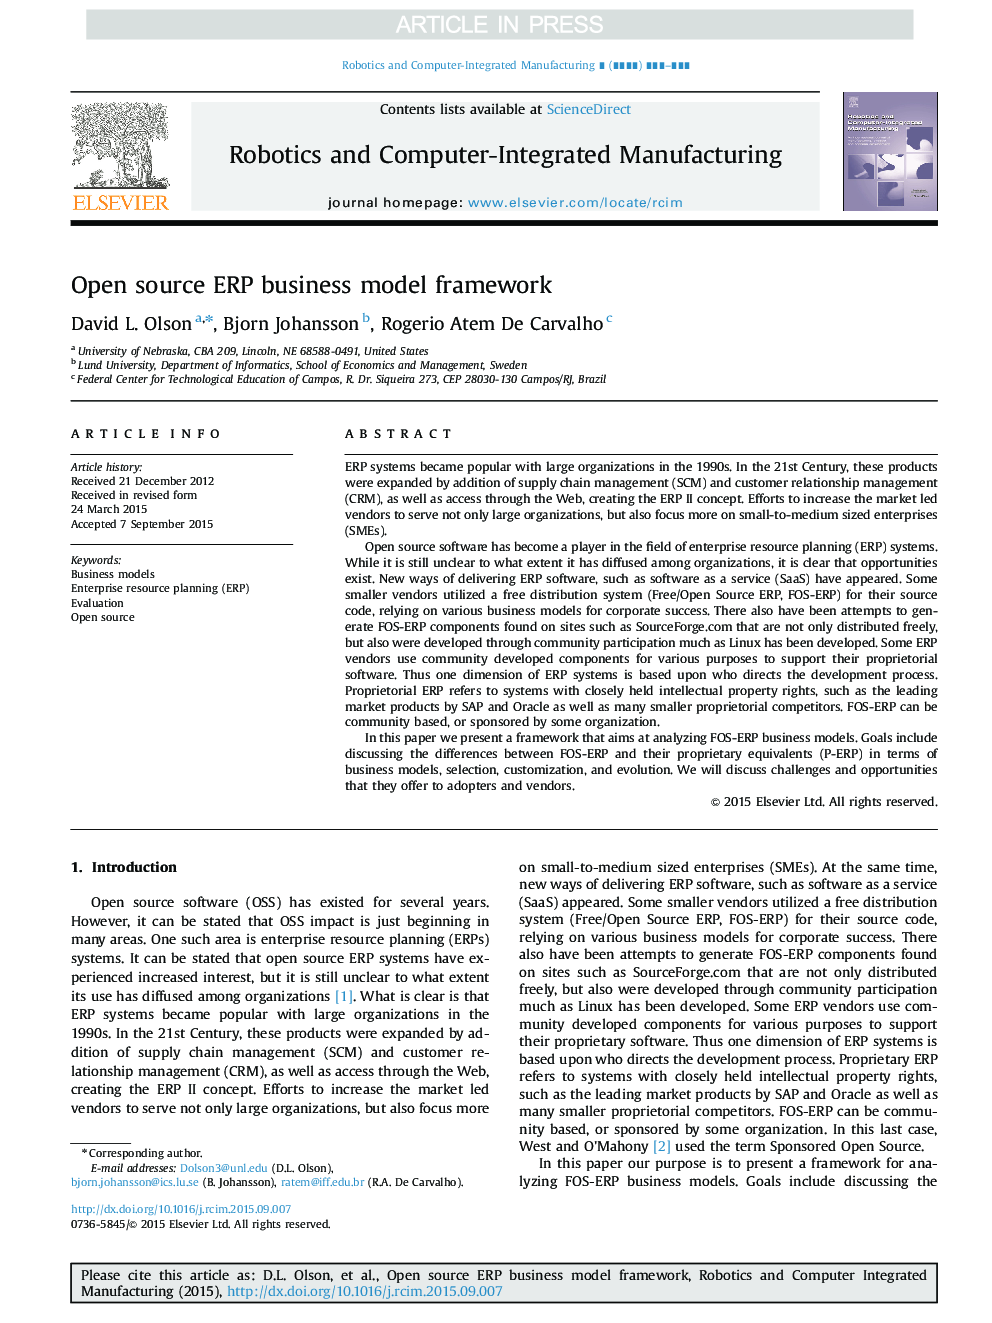 Open source ERP business model framework